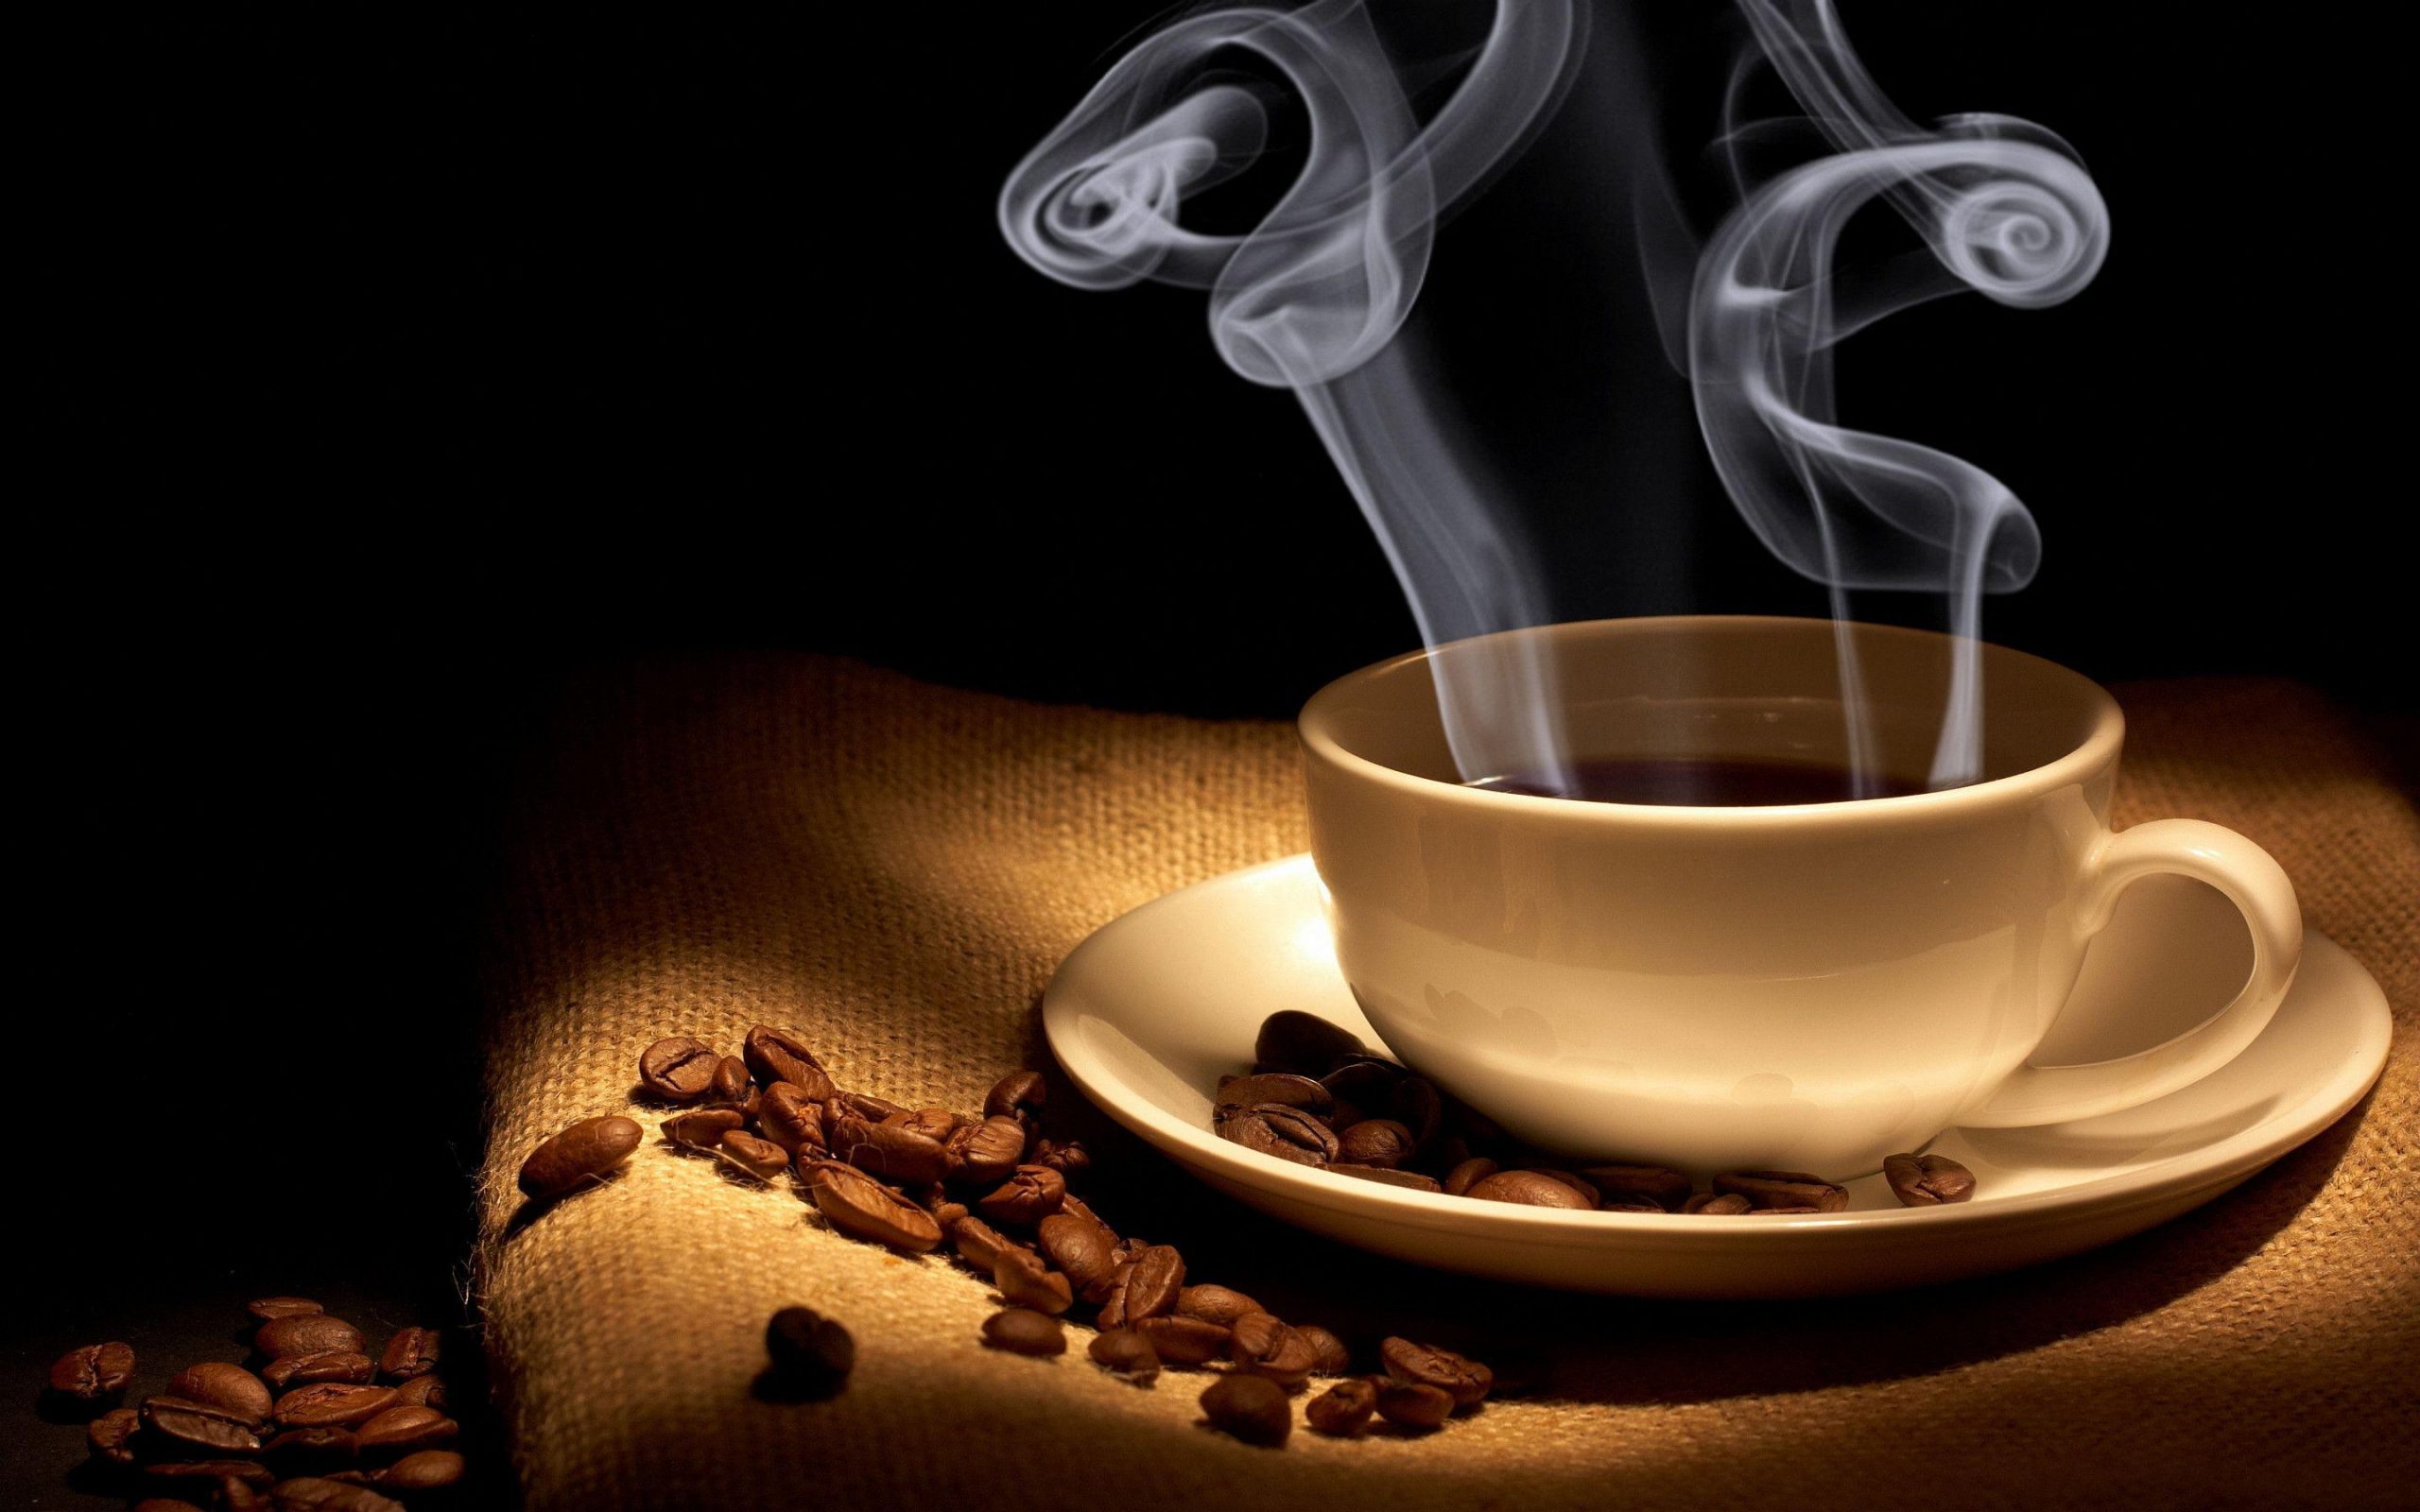 Hình ảnh ly cà phê bốc khói nghi ngút làm ta nhớ về những kí ức đã qua.